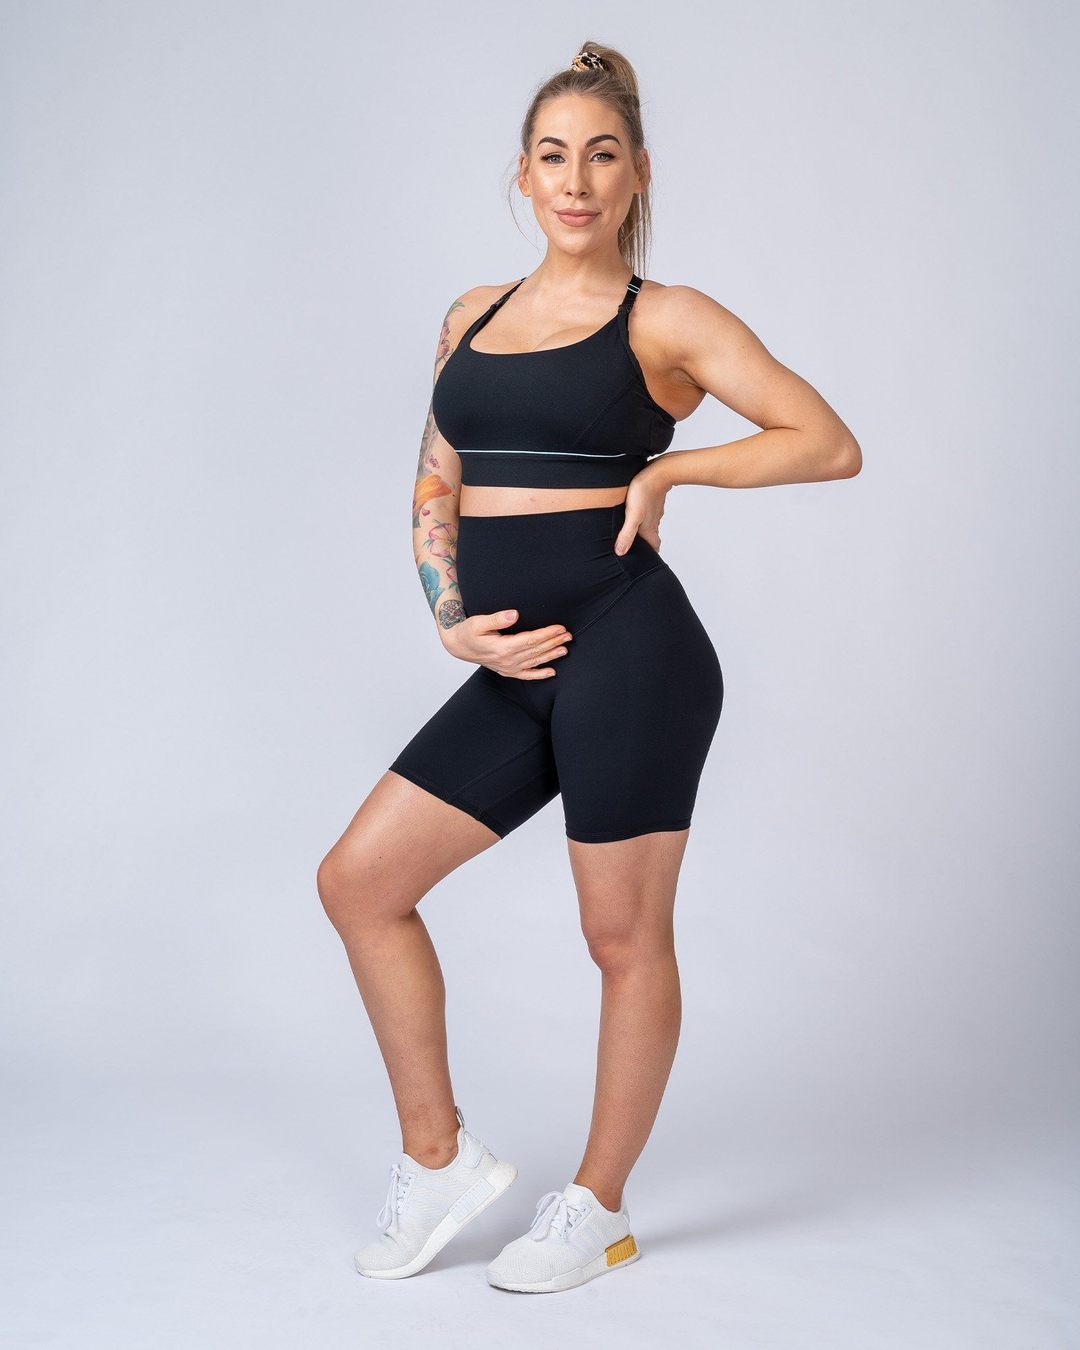 musclenation Maternity Bike Shorts - Black